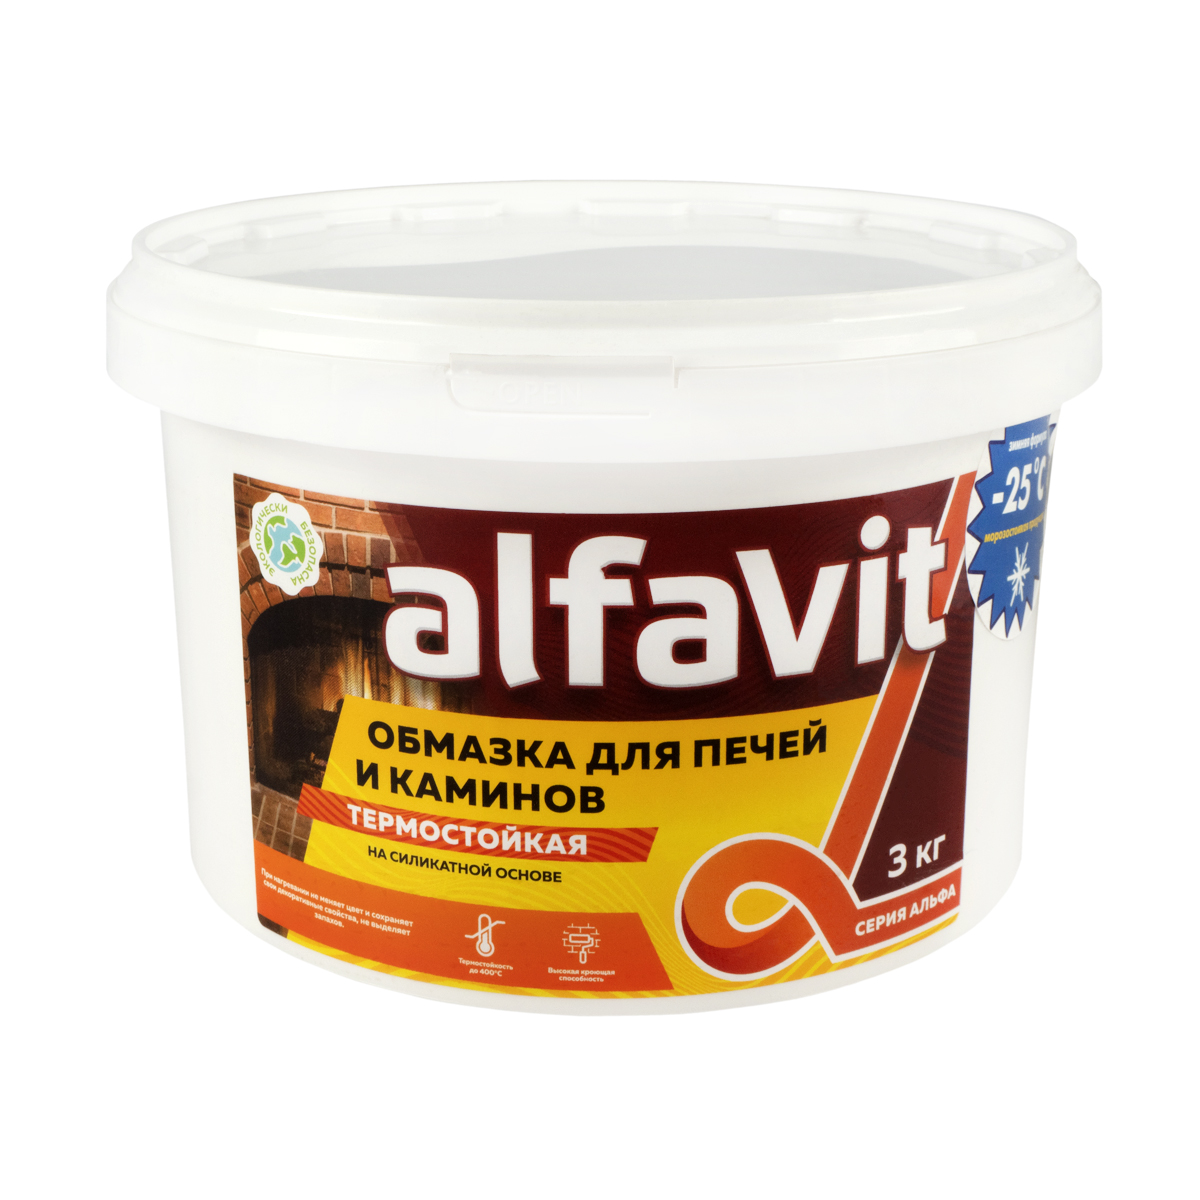 Обмазка для печей и каминов "alfavit" белая 3 кг (1) серия альфа